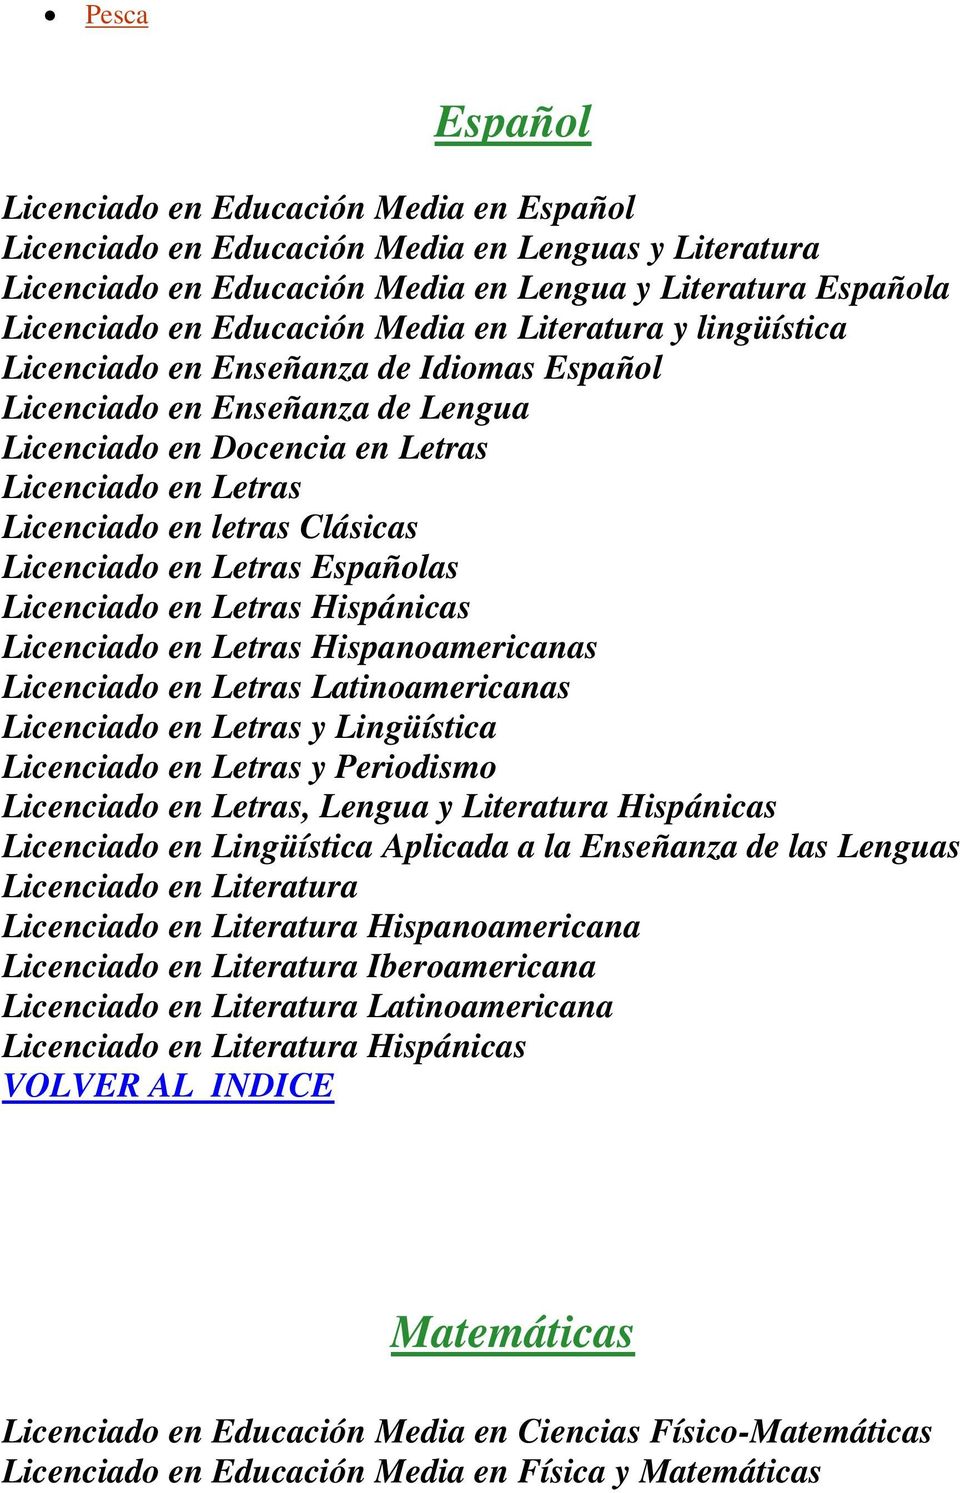 Licenciado en Letras Españolas Licenciado en Letras Hispánicas Licenciado en Letras Hispanoamericanas Licenciado en Letras Latinoamericanas Licenciado en Letras y Lingüística Licenciado en Letras y